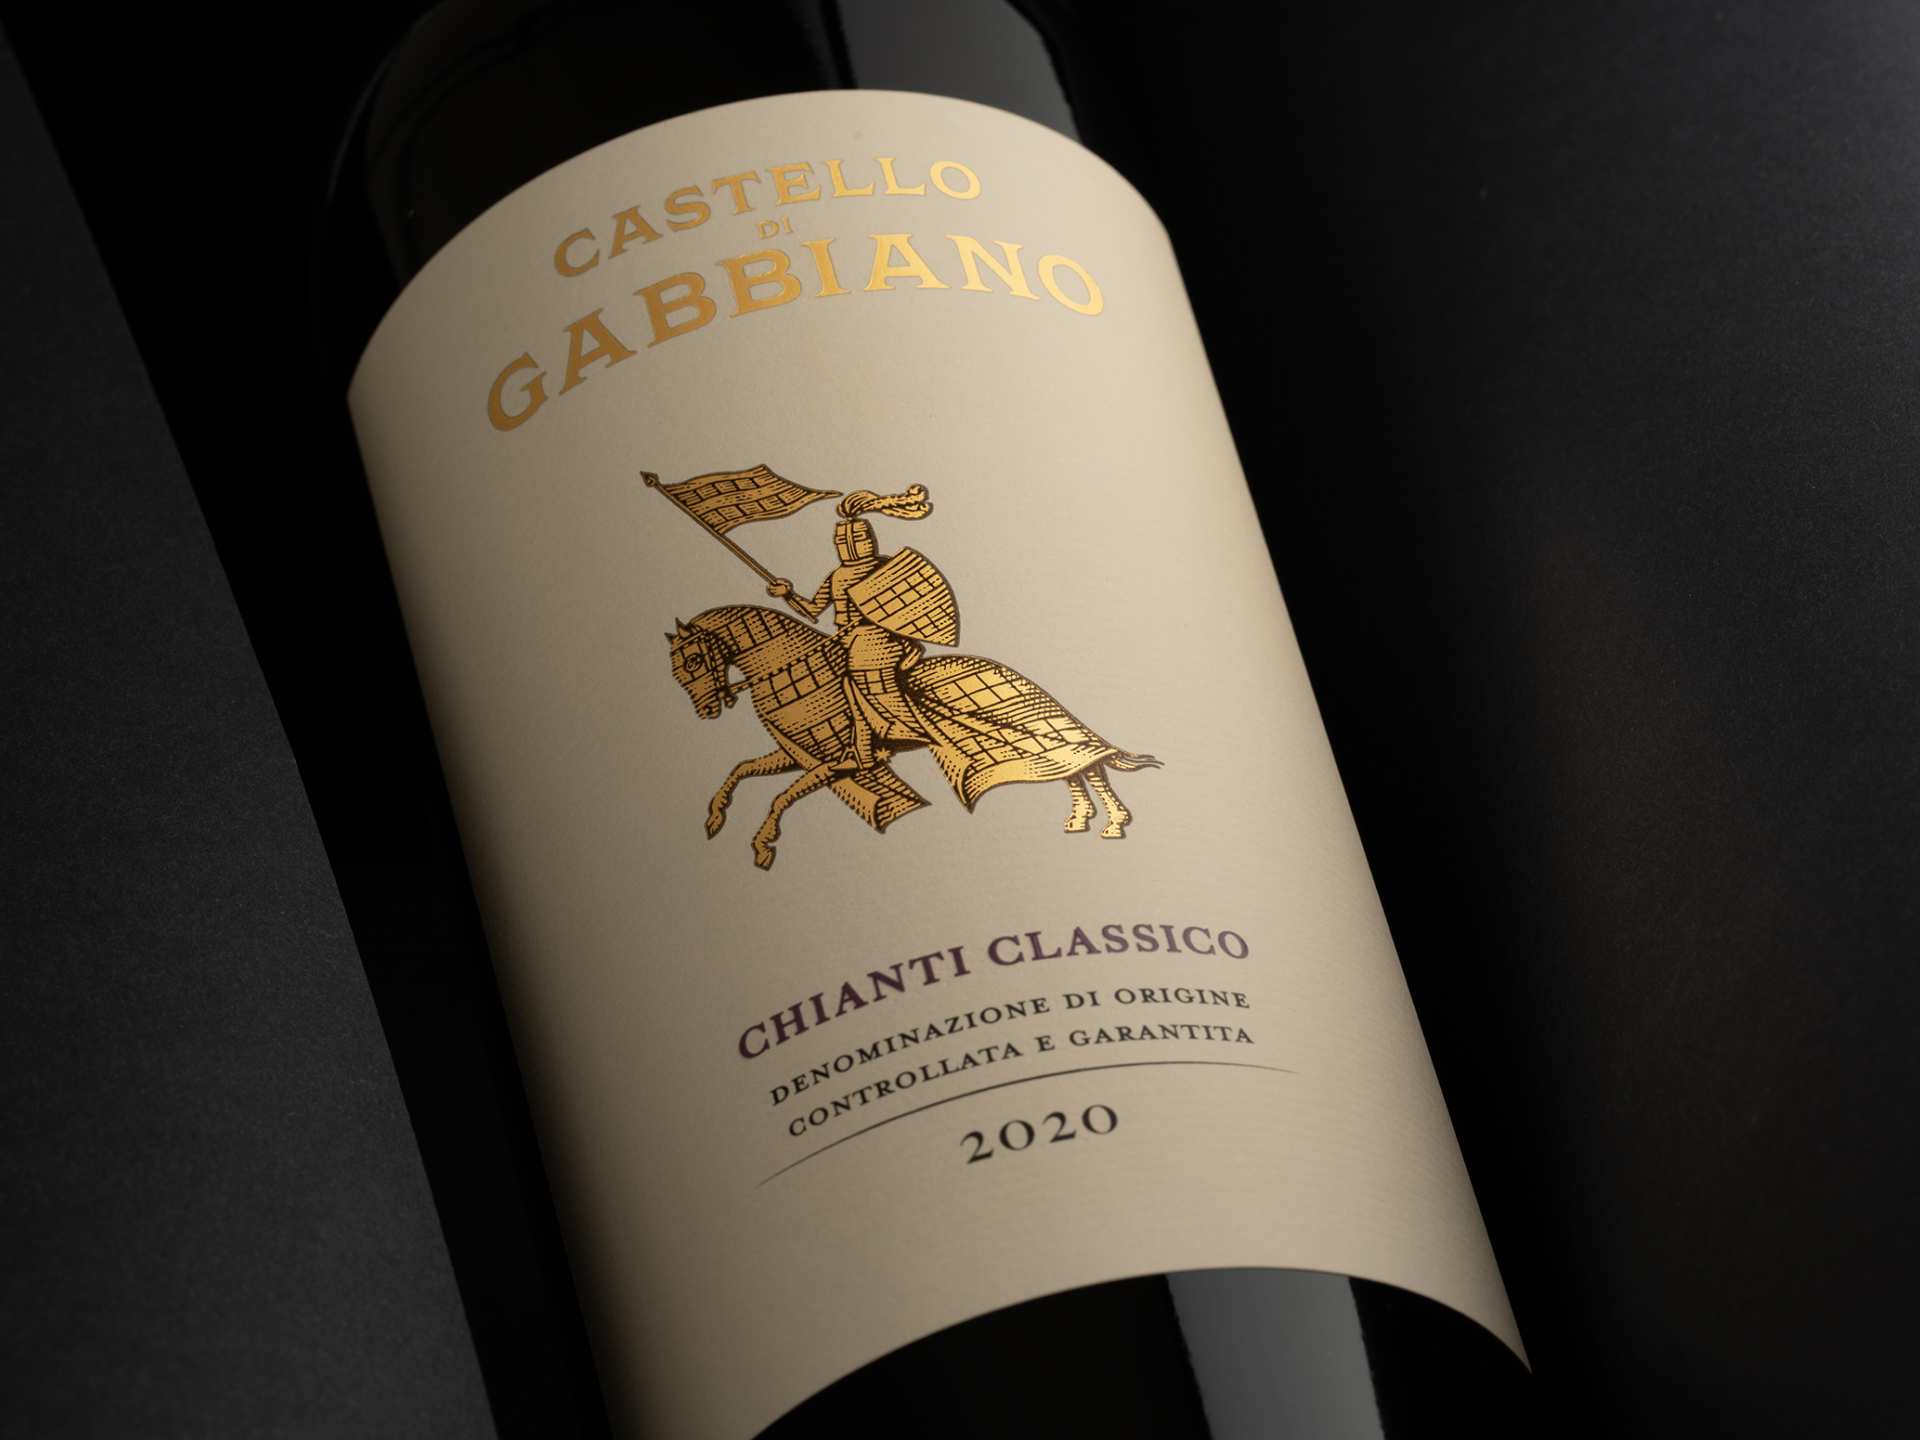 The Castello di Gabbiano Chianti Classico label